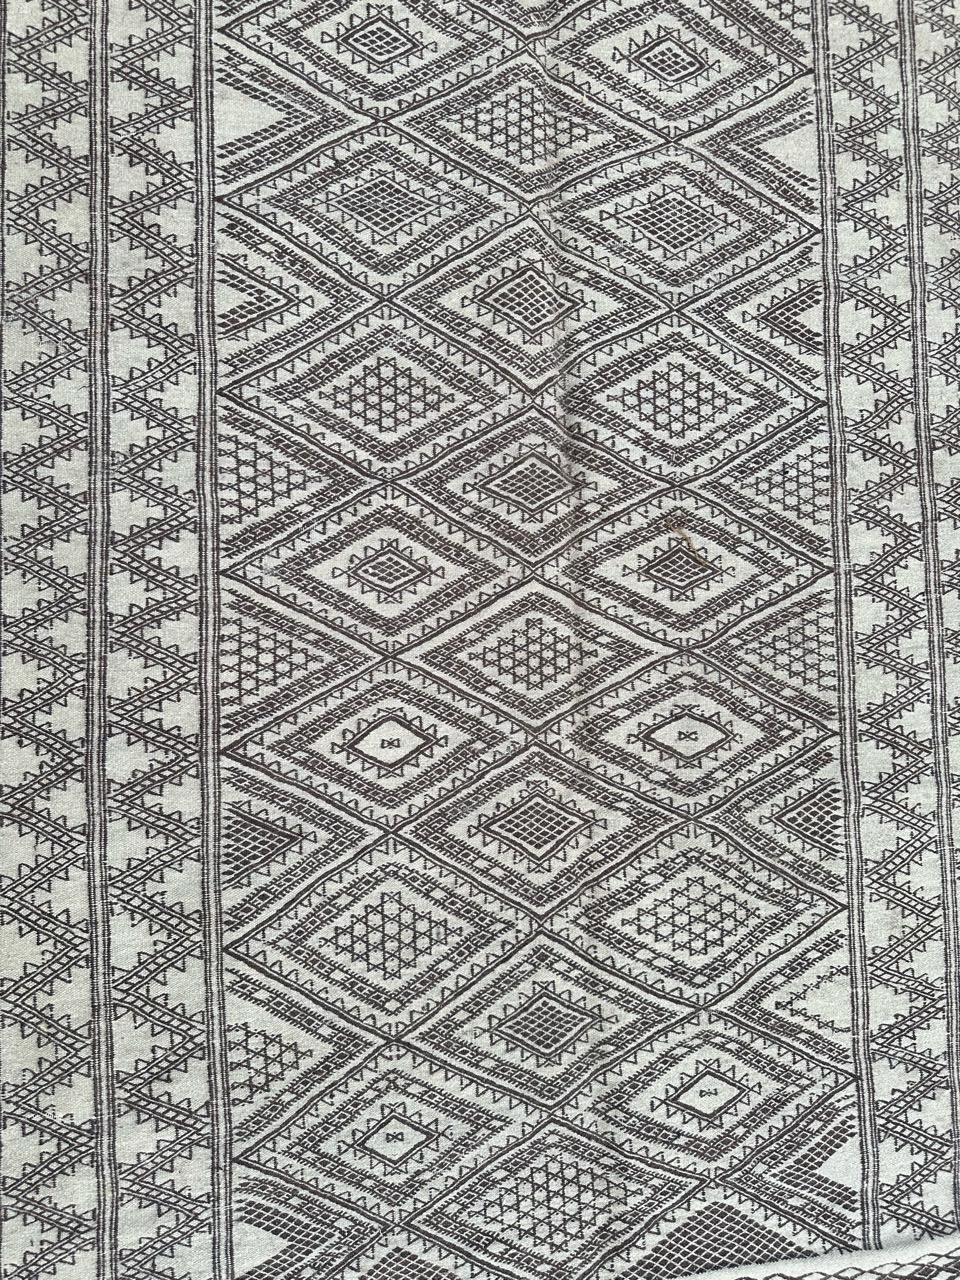 Schöne Mitte des Jahrhunderts Stammes marokkanischen Kilim mit schönen geometrischen und Stammes-Muster und schöne Farben mit einem beige und braun, komplett von Hand gewebt mit Wolle auf Baumwolle Grundlage.
Kann an einem Ende beschädigt werden und